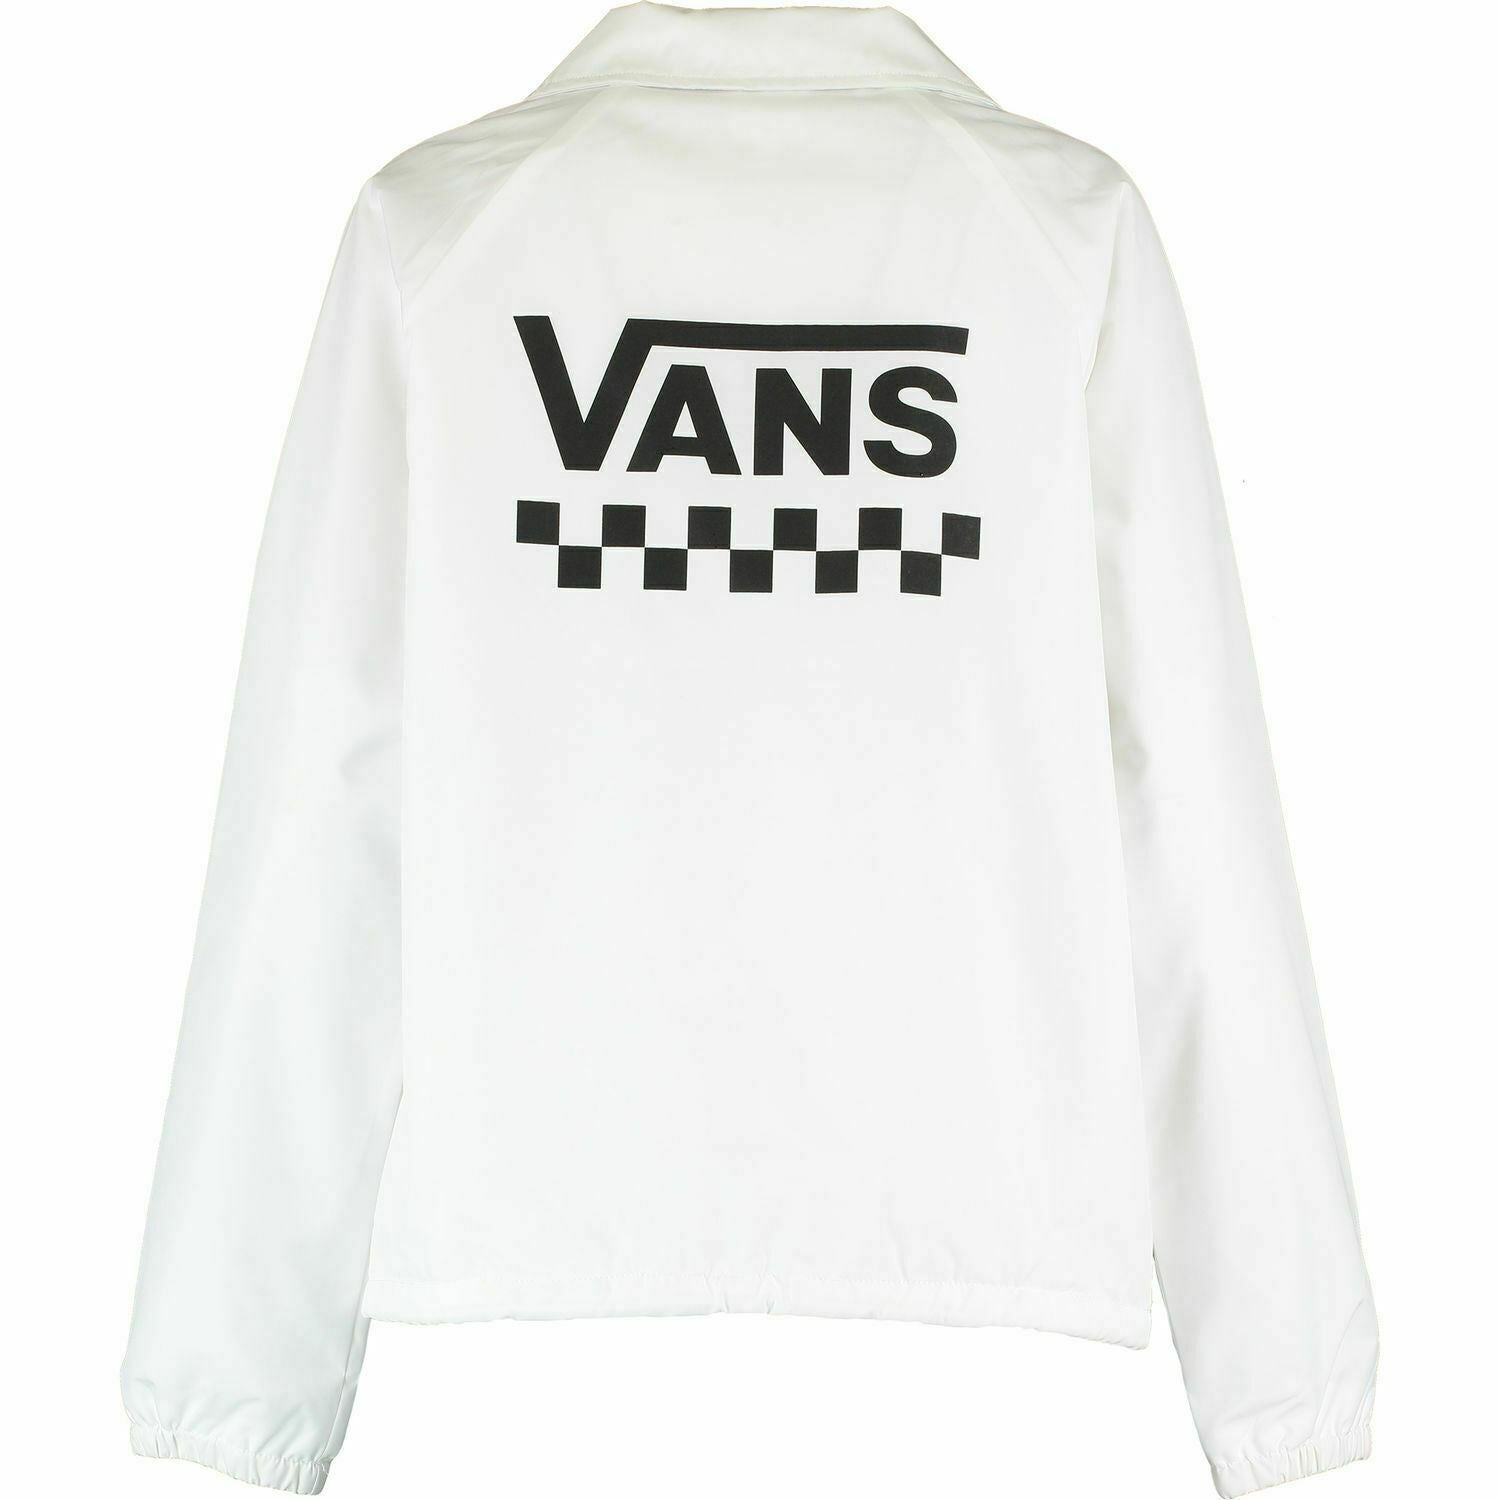 VANS Women's White Logo Print Jacket size XS